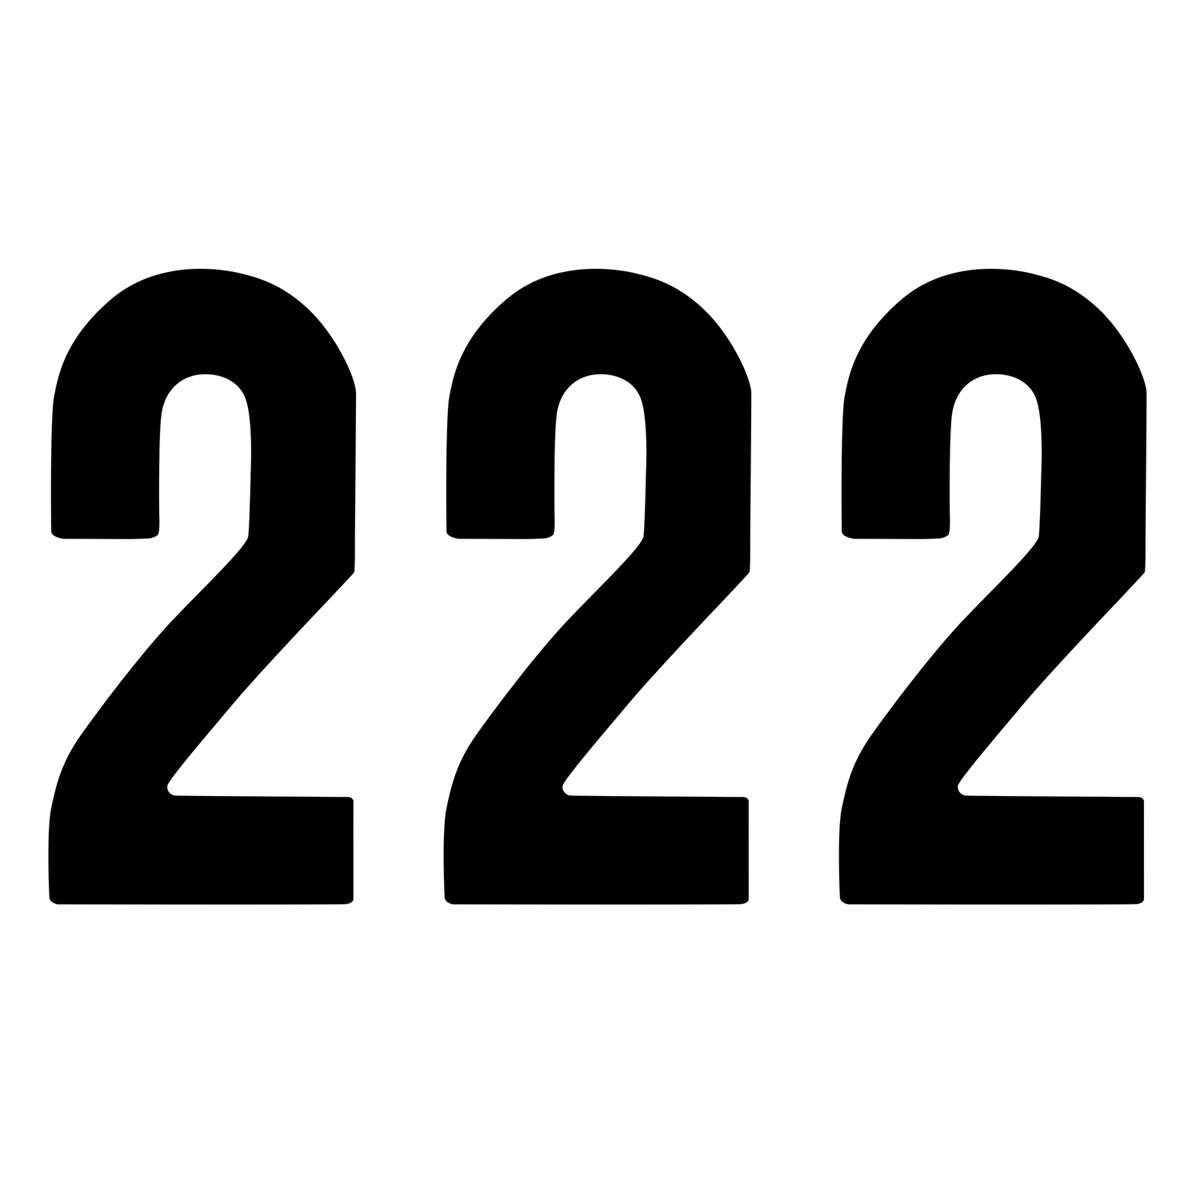 ZAP Numbers set Racing Number 2, Black, 14 cm, 3 pieces